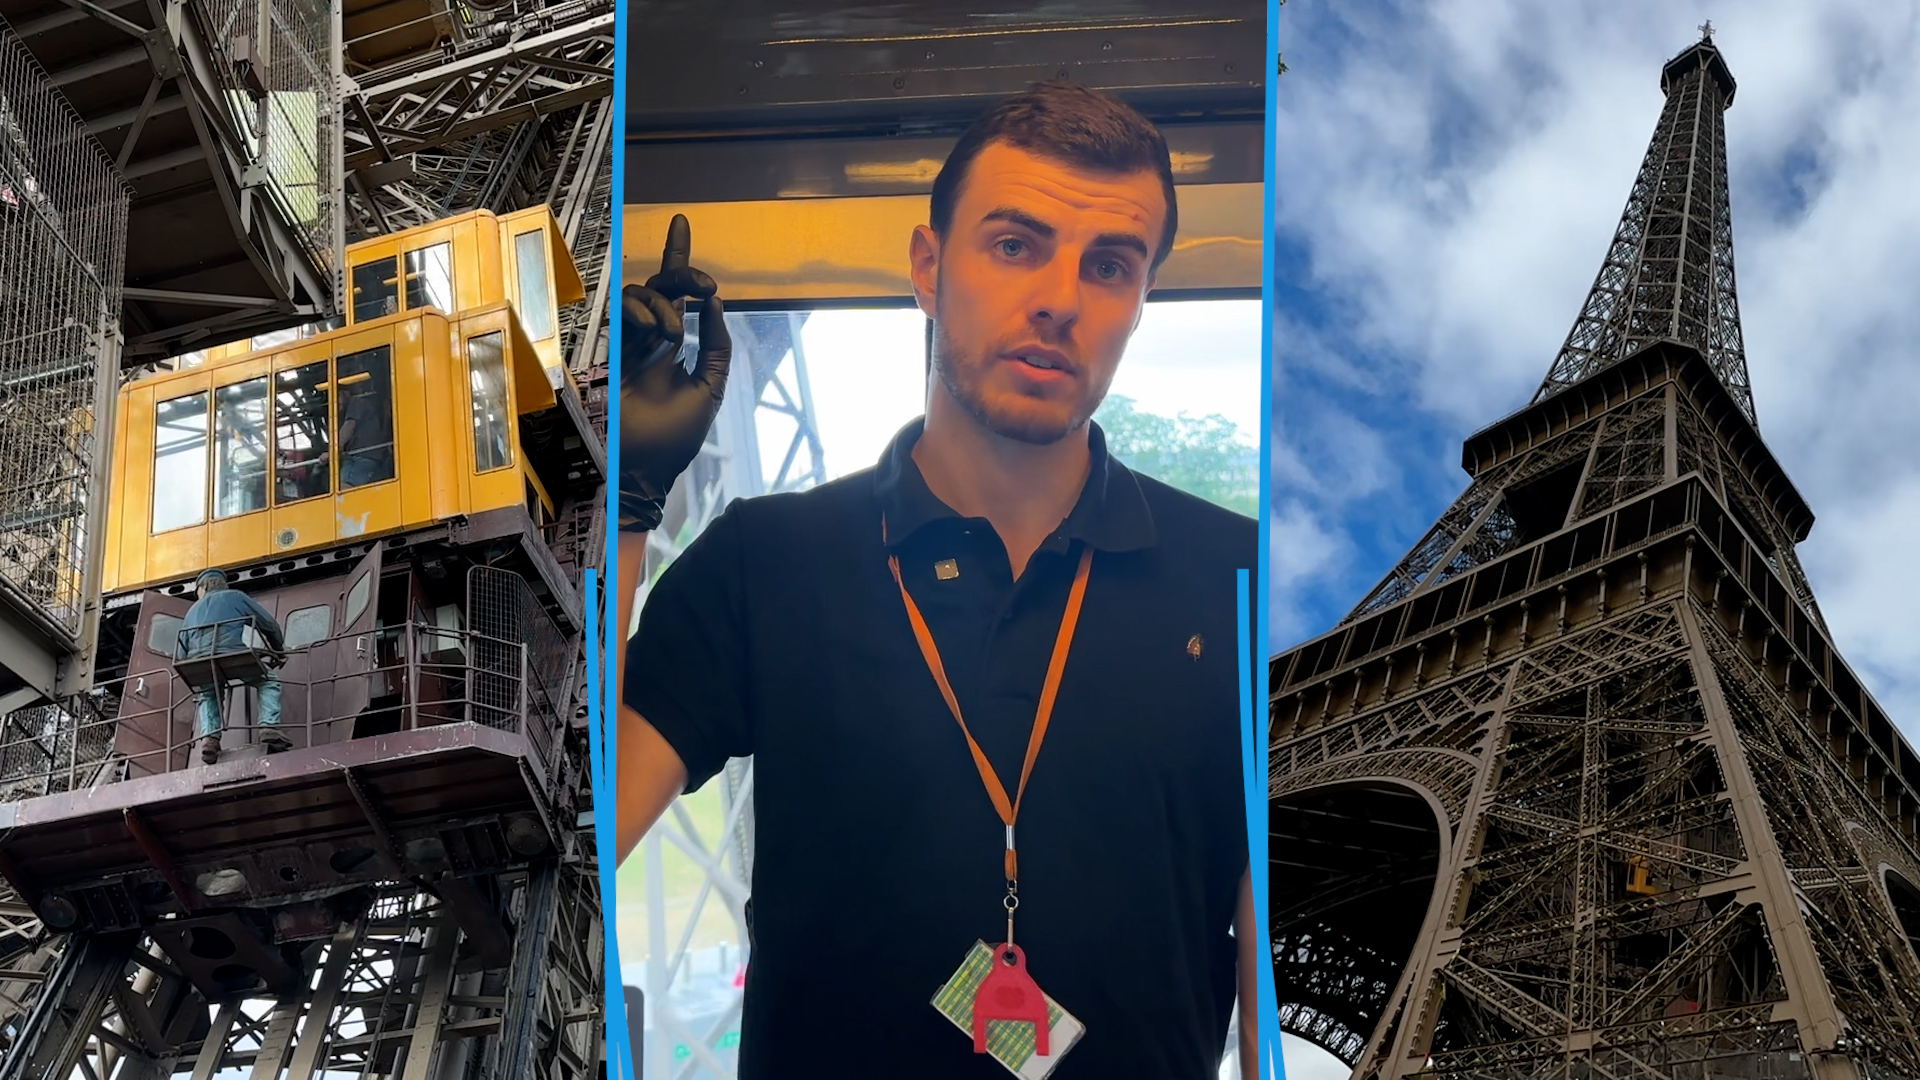 Mécaniciens, plombiers et électriciens vérifient le bon fonctionnement des ascenseurs de la tour Eiffel qui réalisent une centaine d'allers-retours par jour